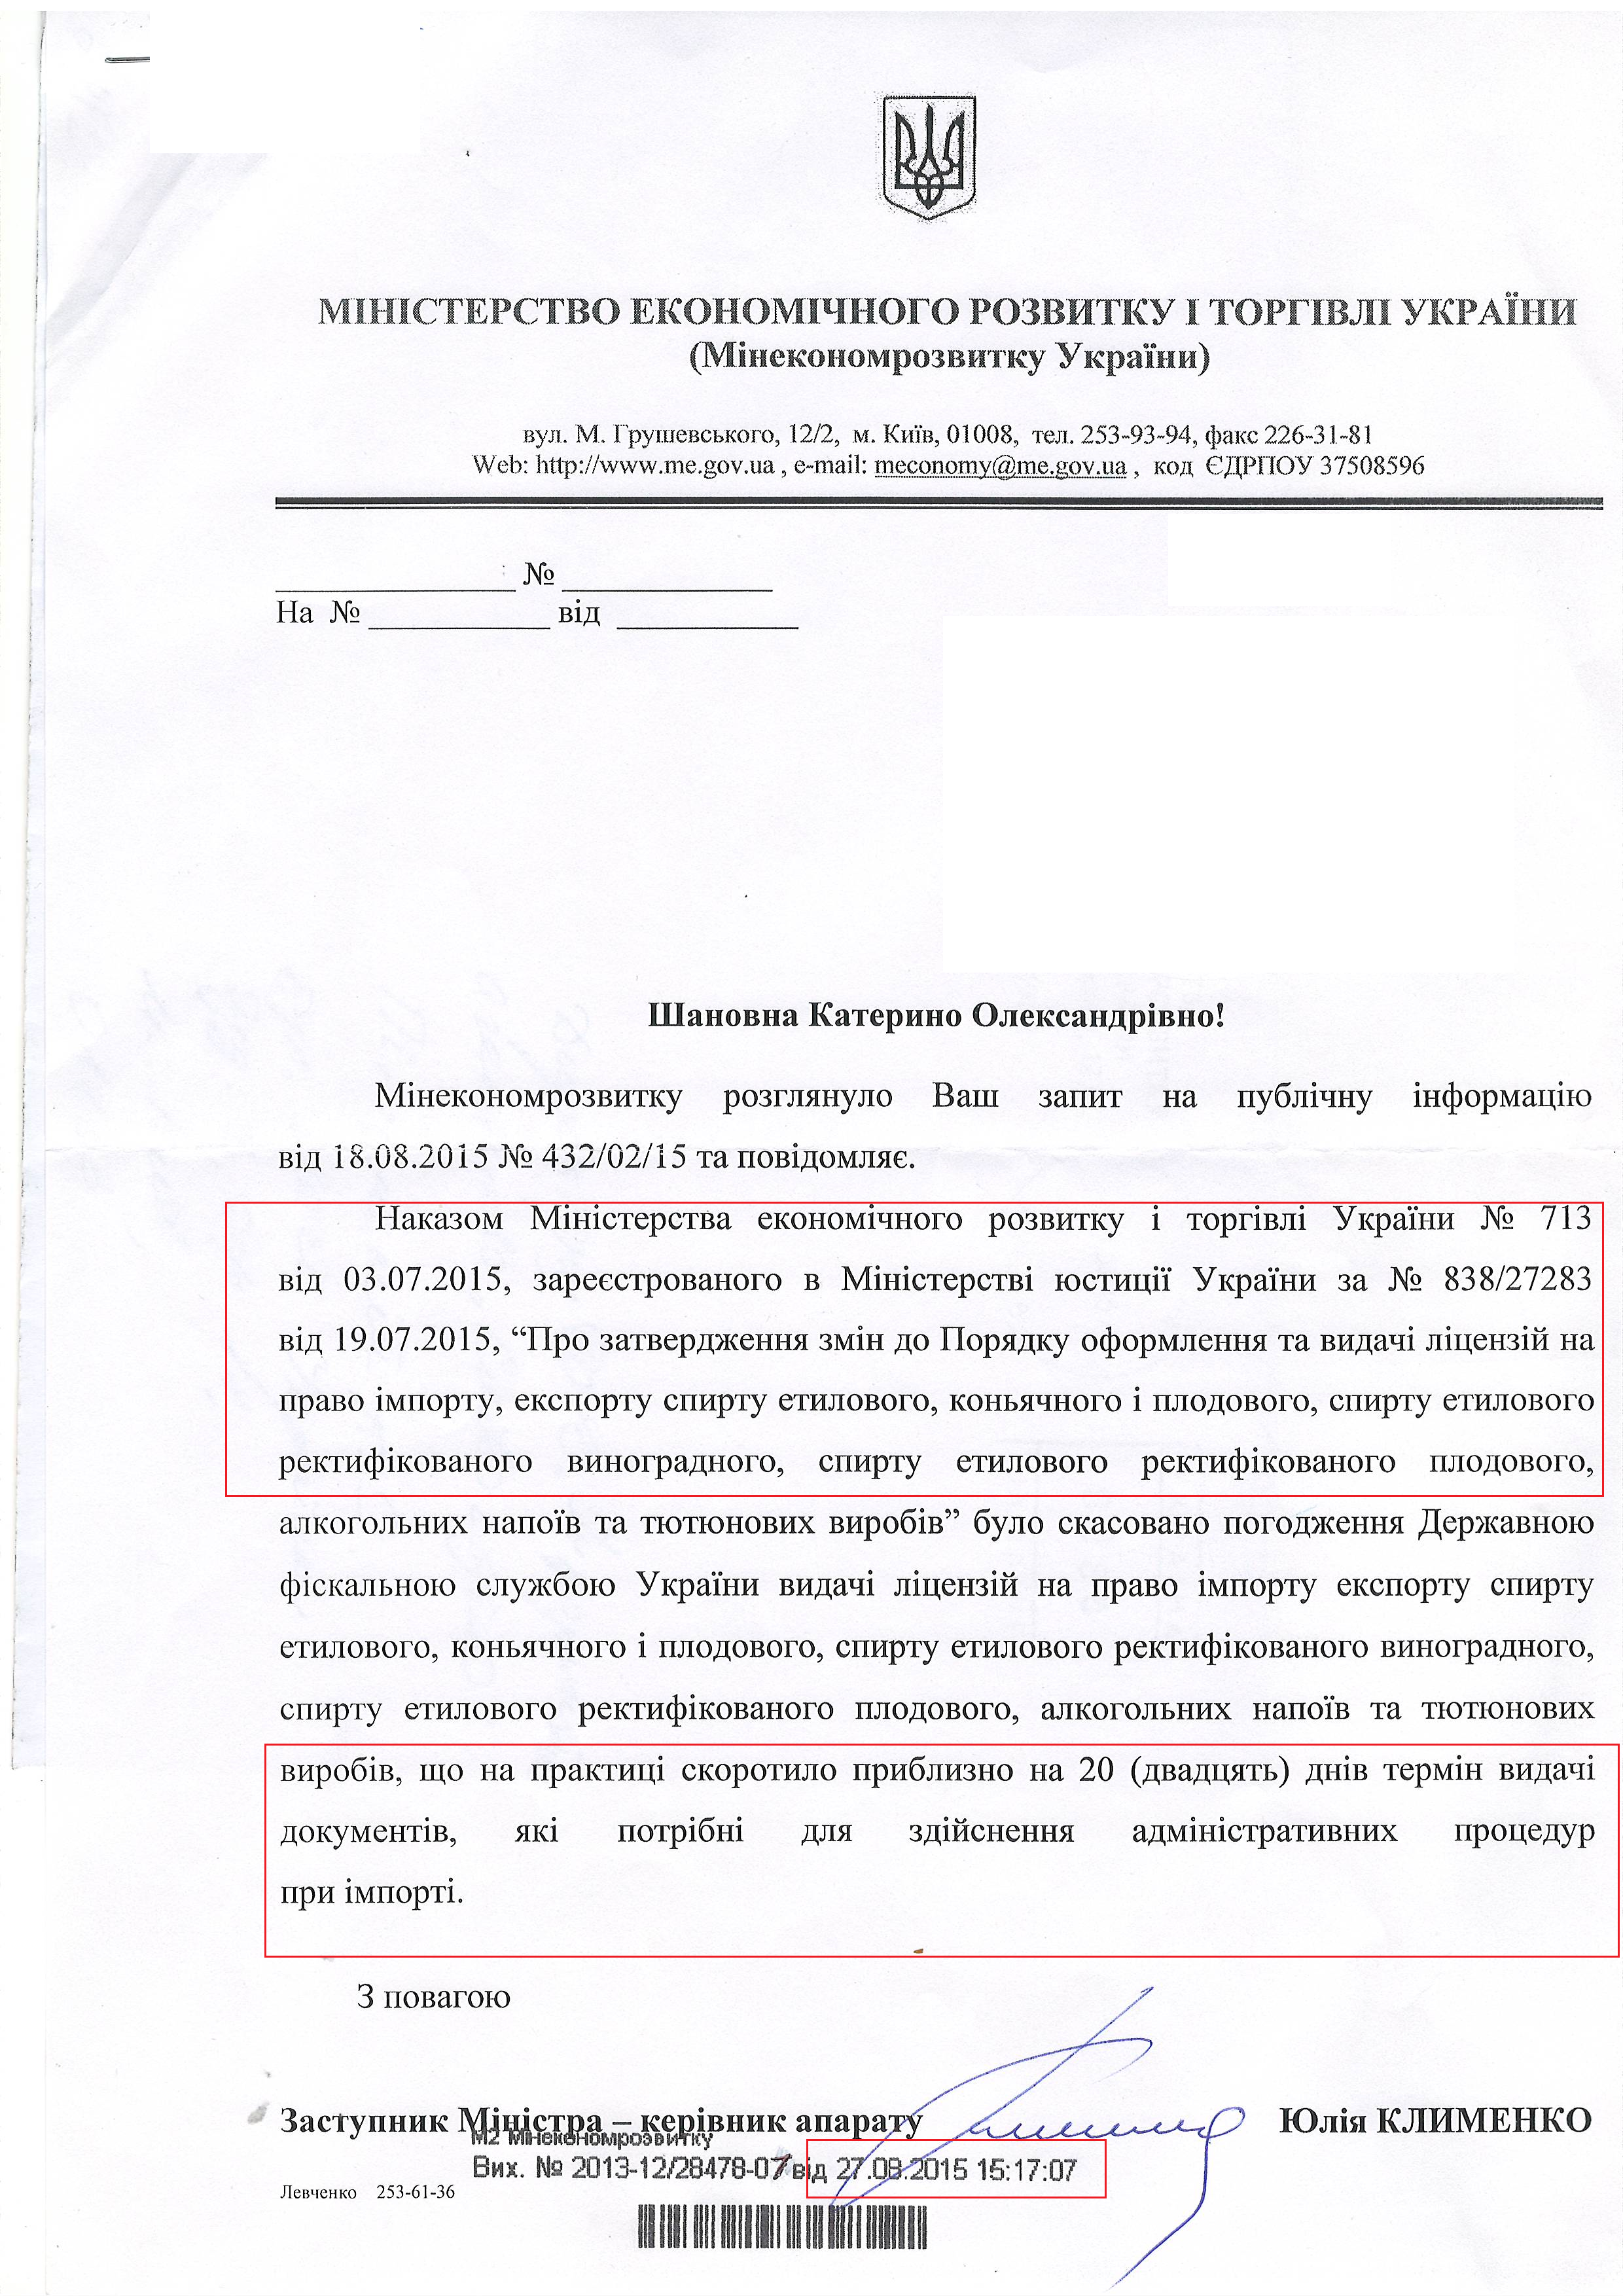 Лист Міністерства економічного розвитку і торгівлі України від 27 серпня 2015 року